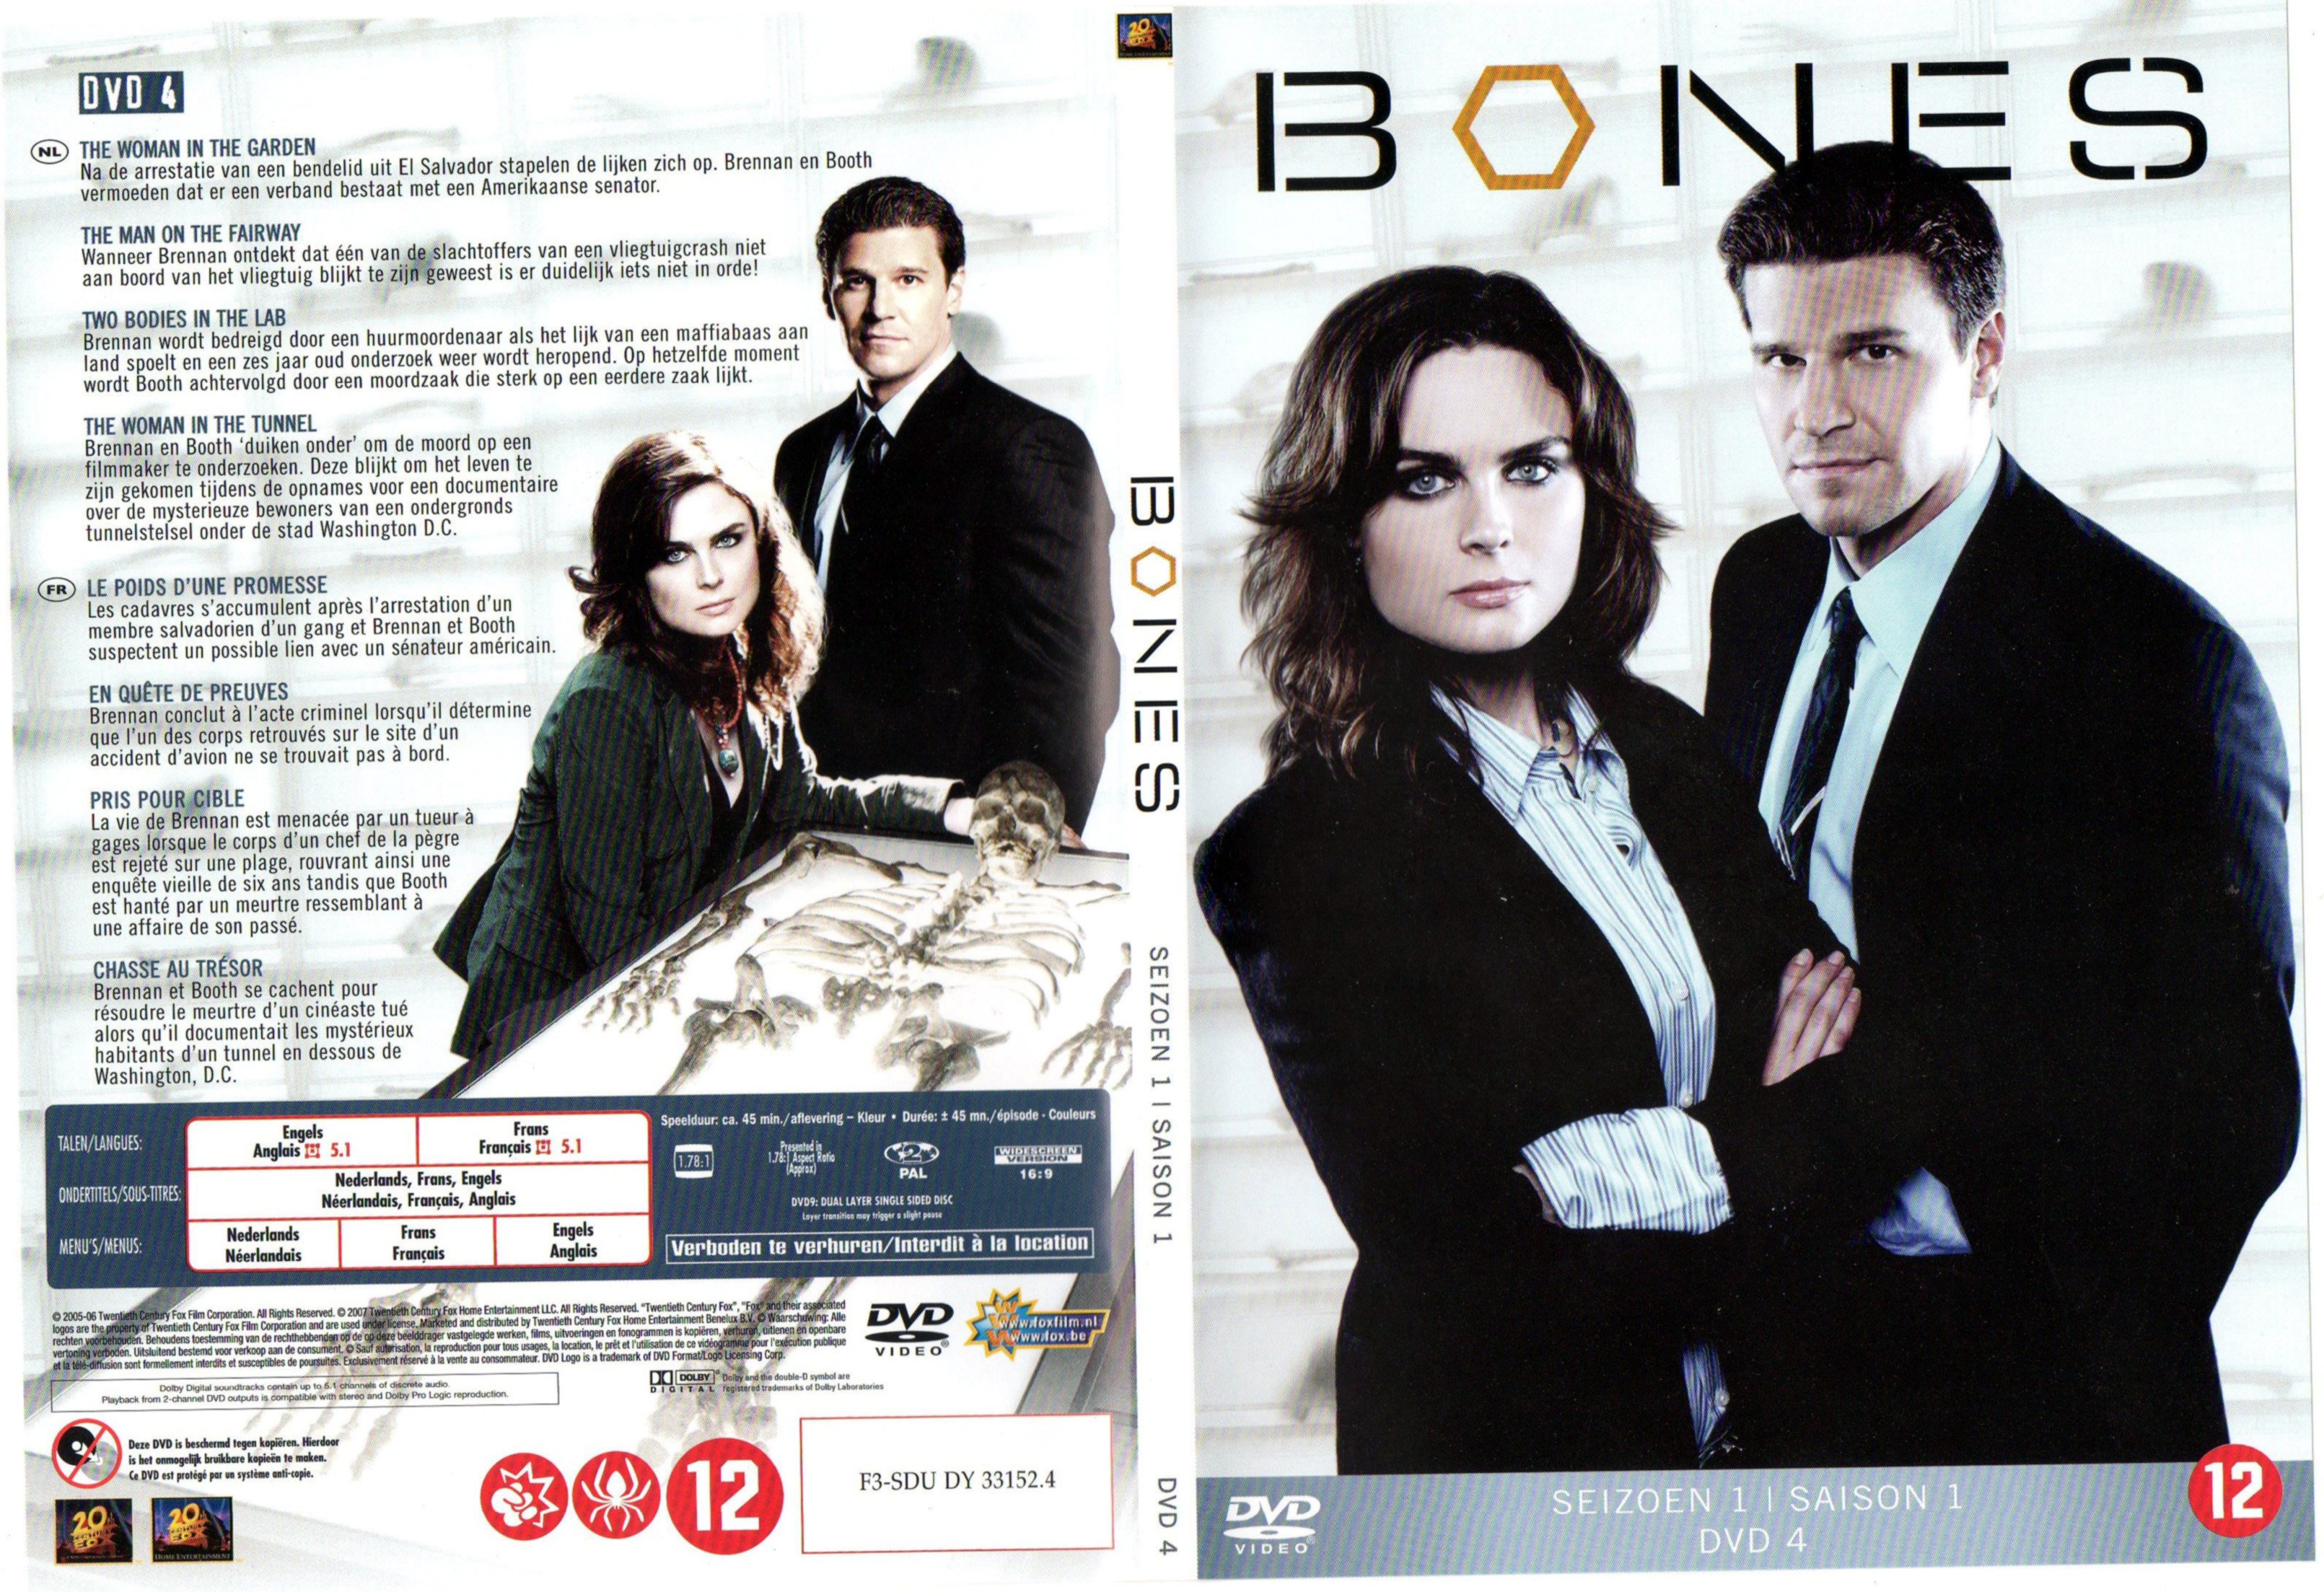 Jaquette DVD Bones Saison 1 DVD 4 v2